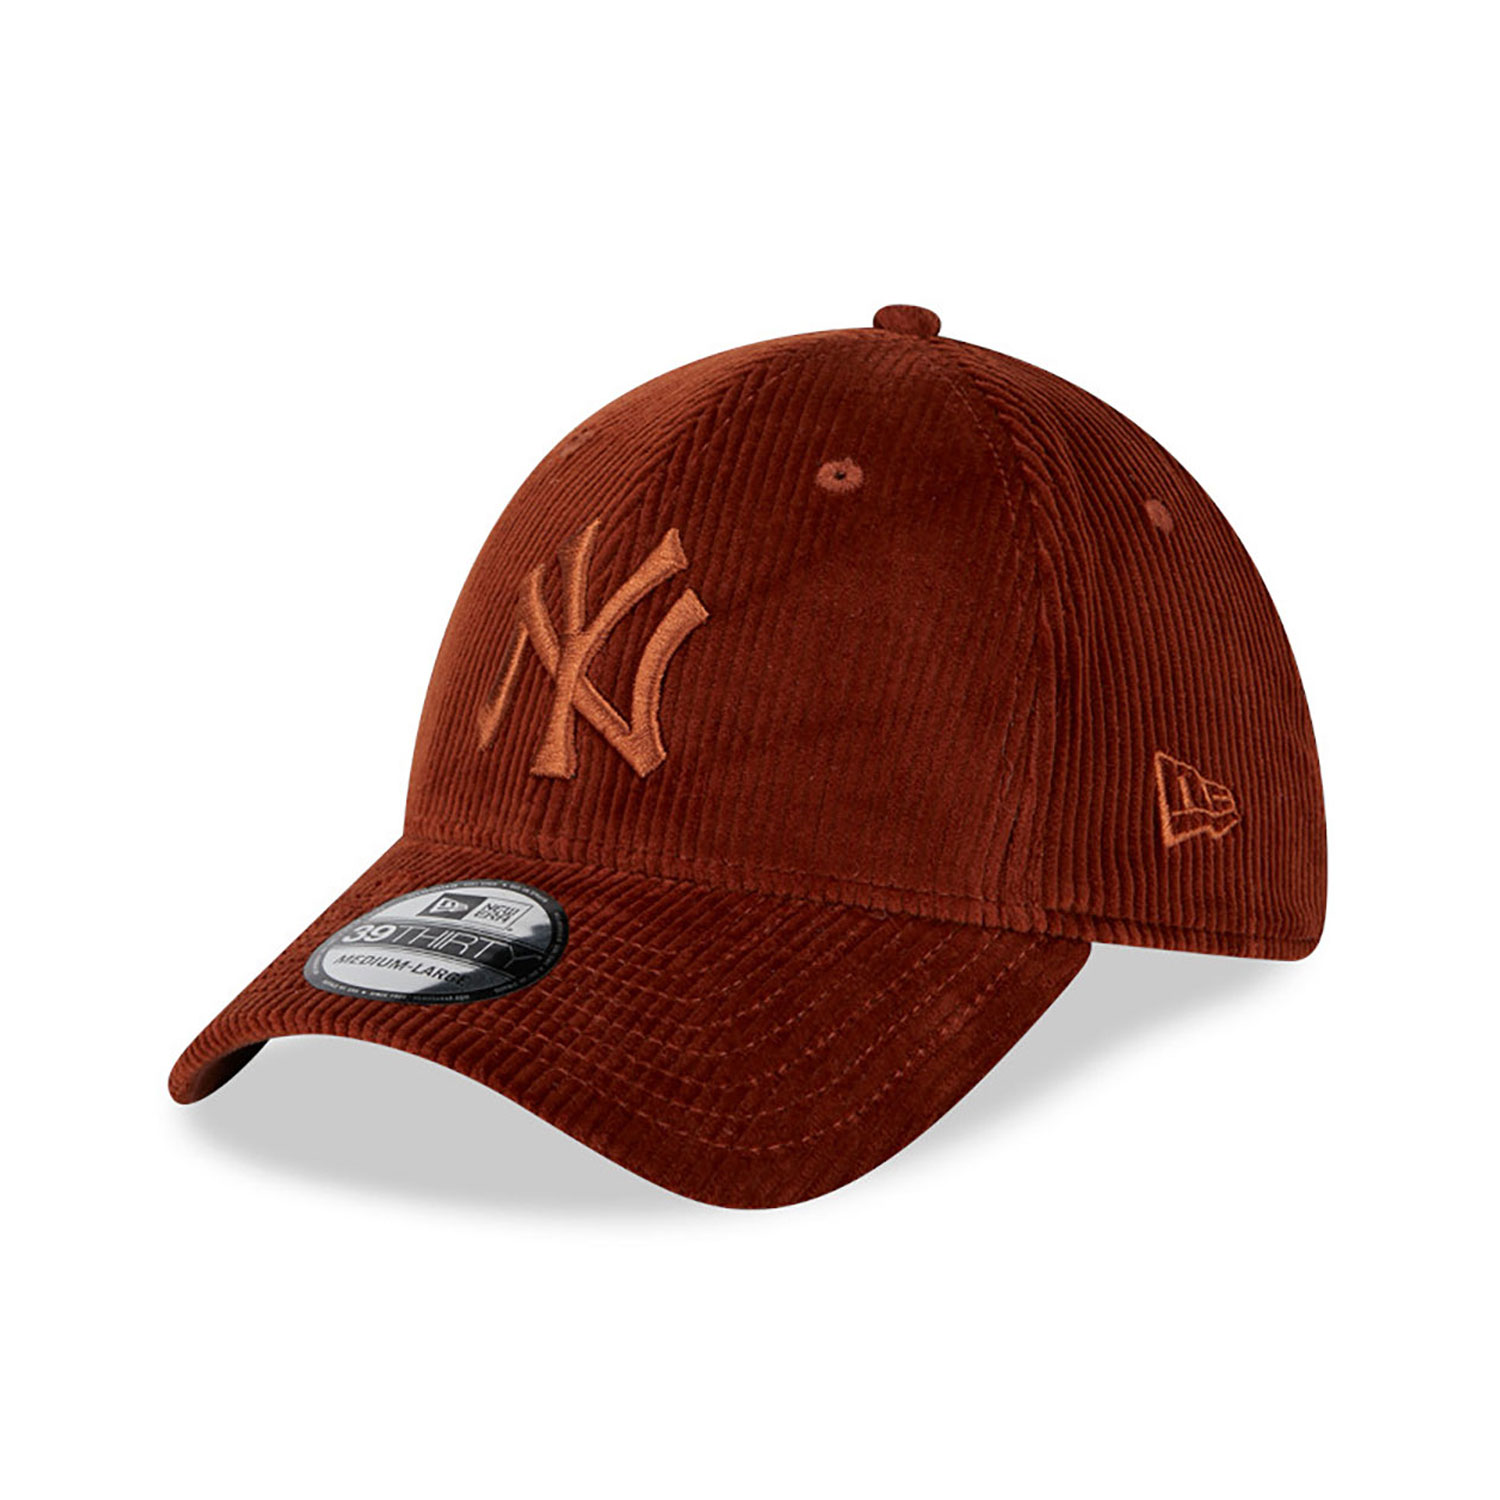 Acheter la casquette New Era 39Thirty marron des Yankees